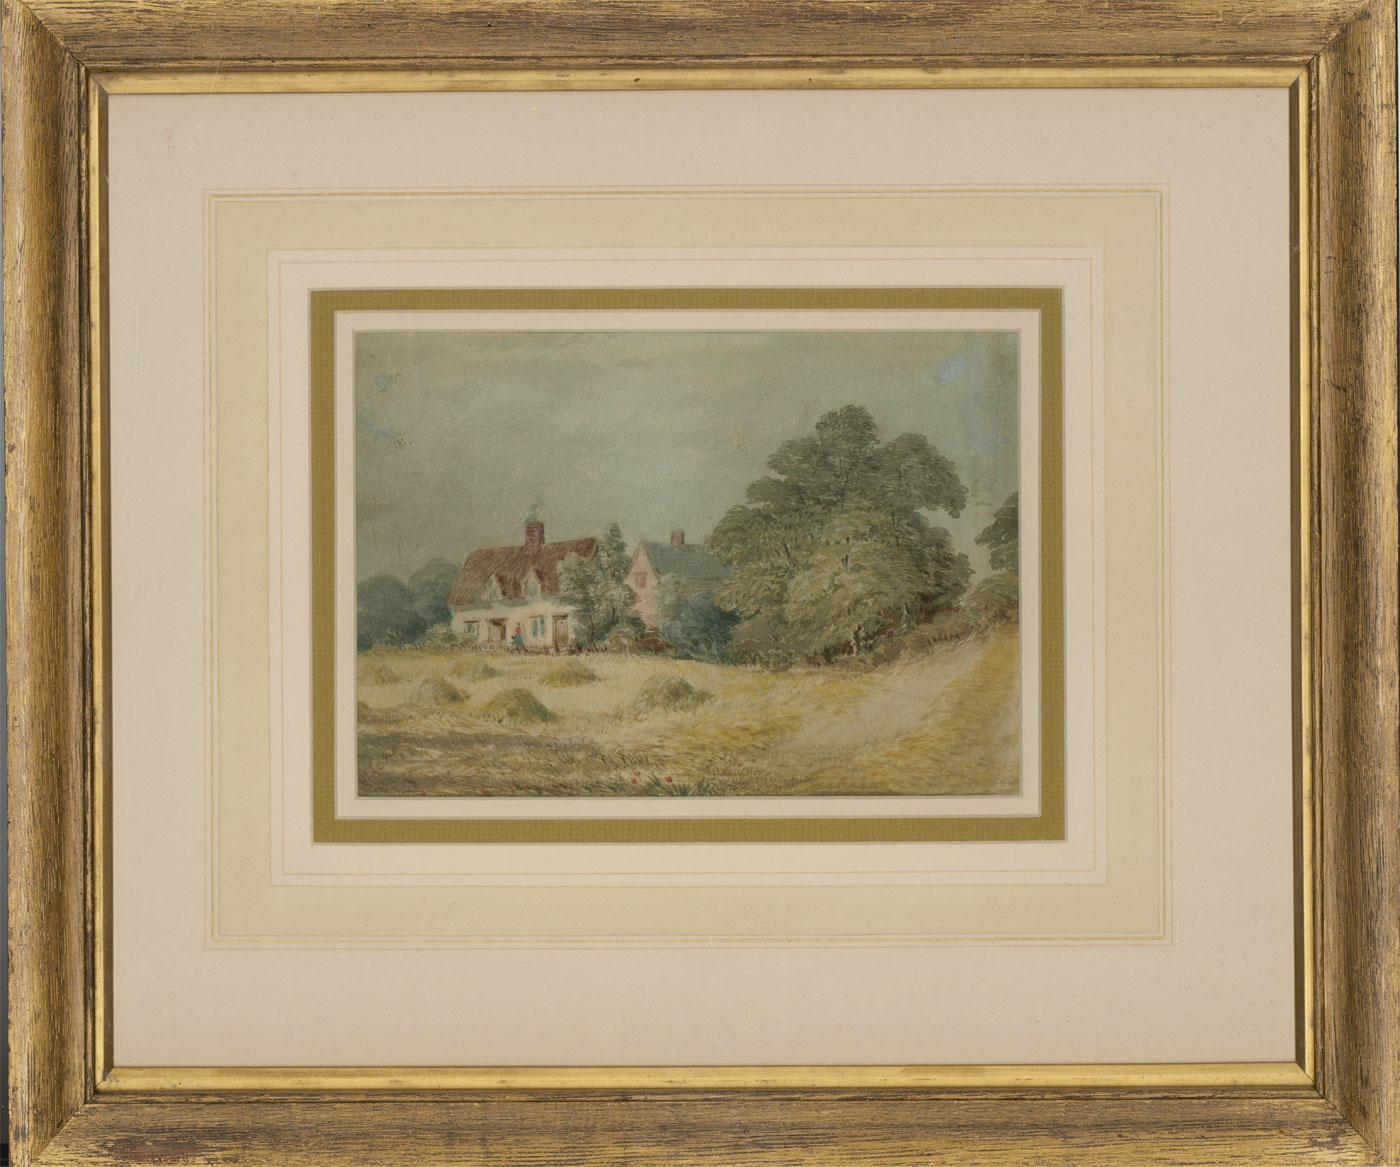 Unknown Landscape Art - David Cox Jnr. ARWS (1809-1885) - 19th Century Watercolour, Farming Cottages